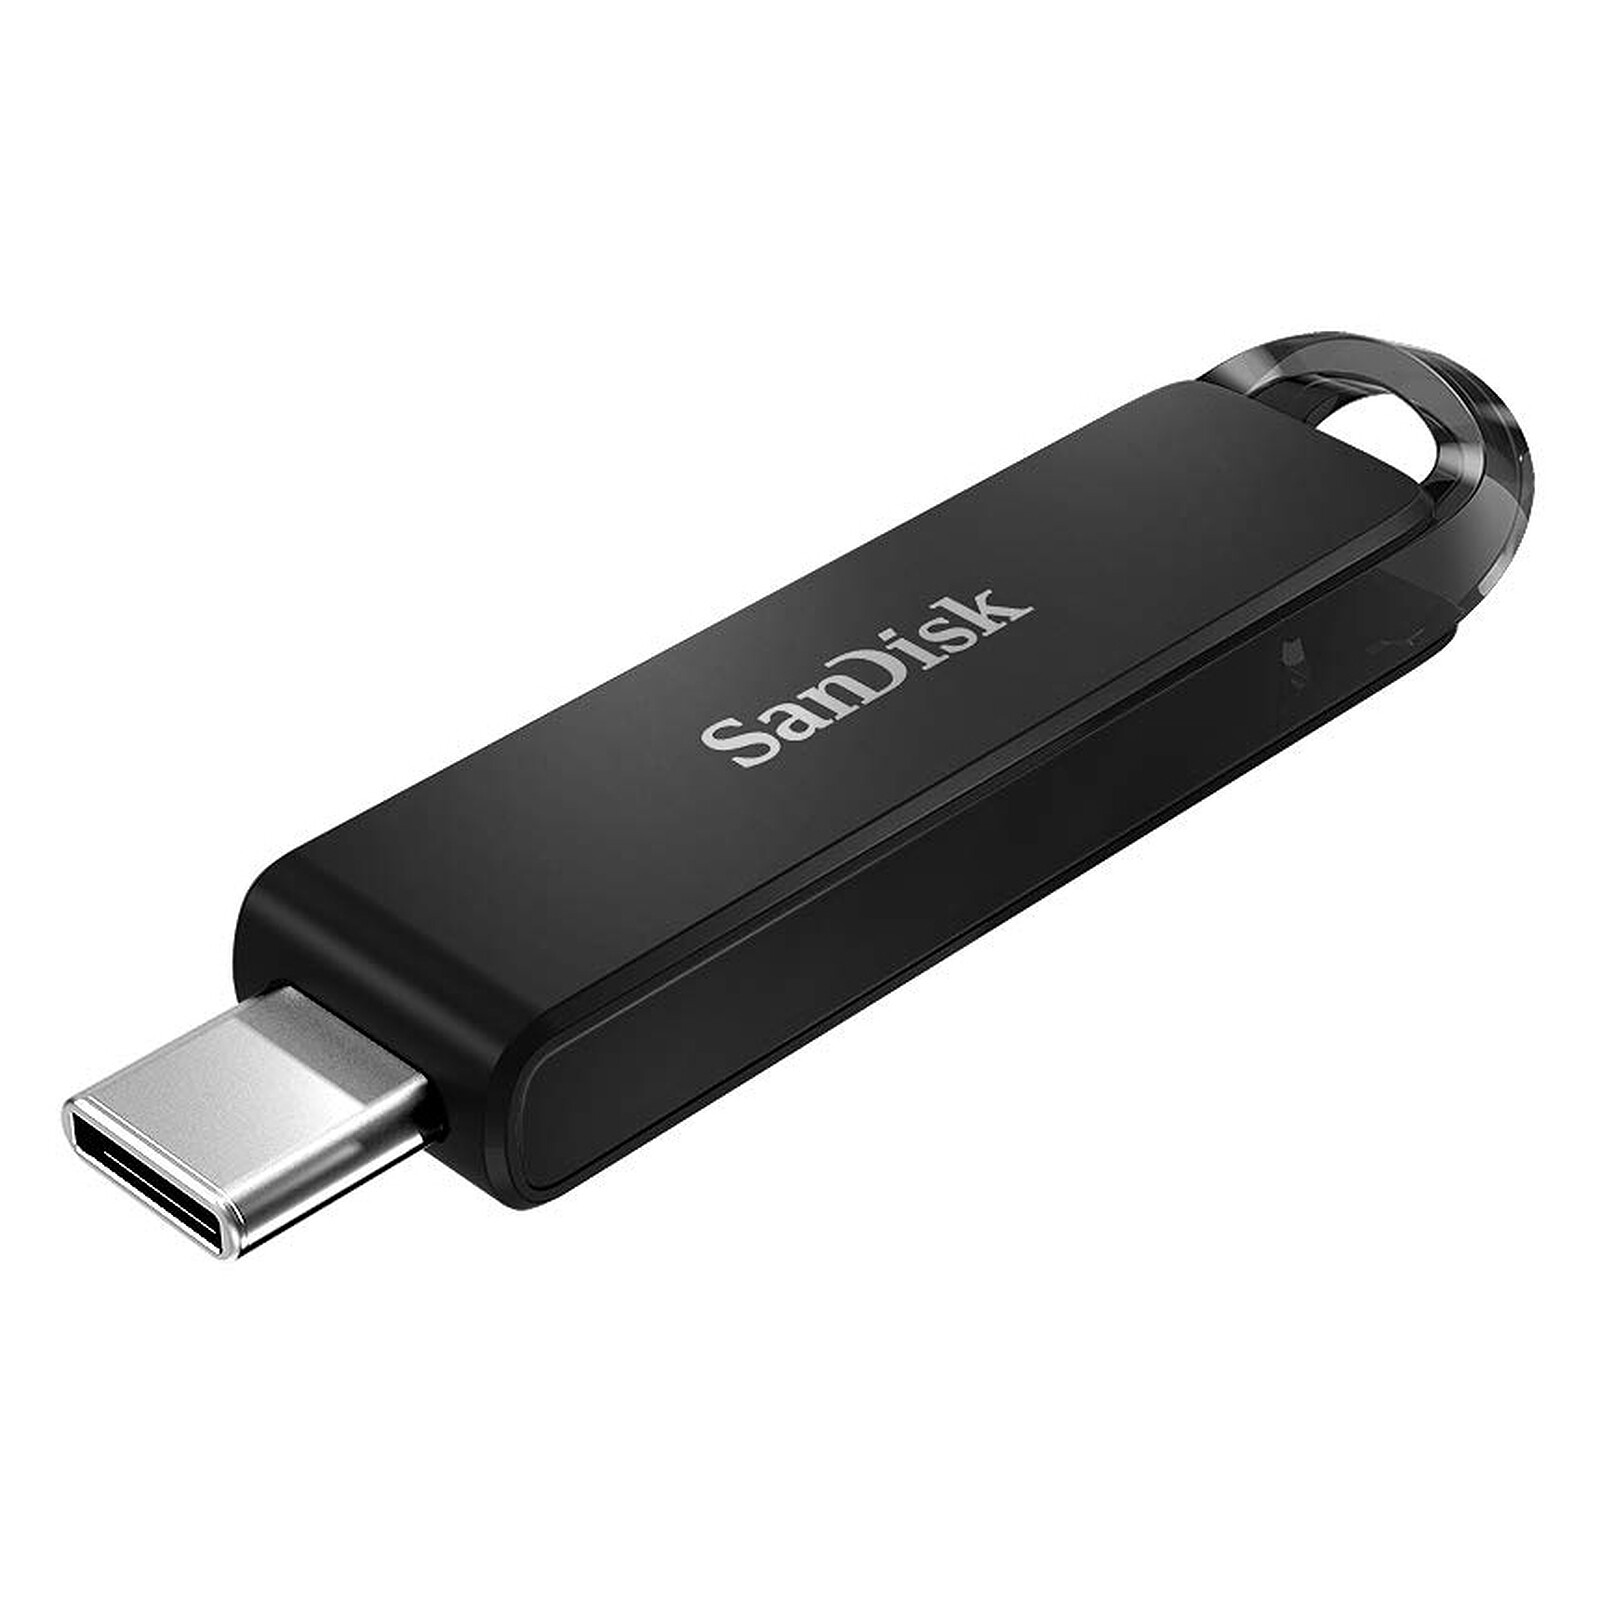 SANDISK CLE USB 16GB / 32GB ULTRA FIT USB 3.1 FLASH DRIVE